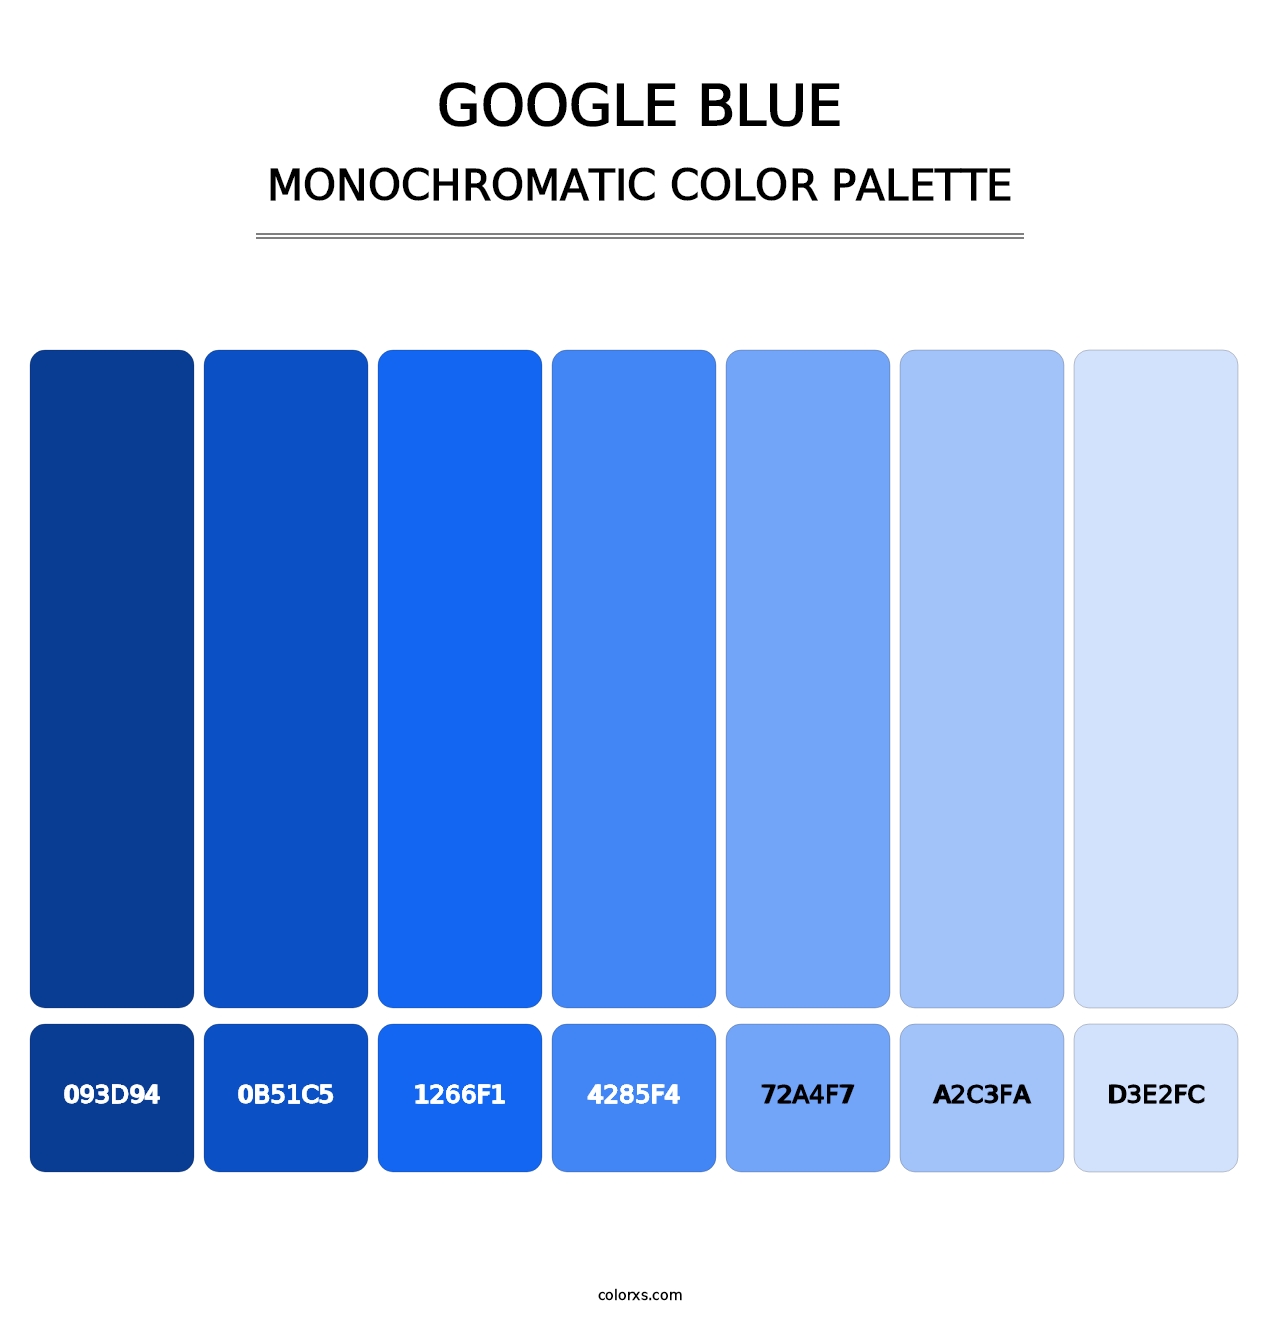 Google Blue - Monochromatic Color Palette